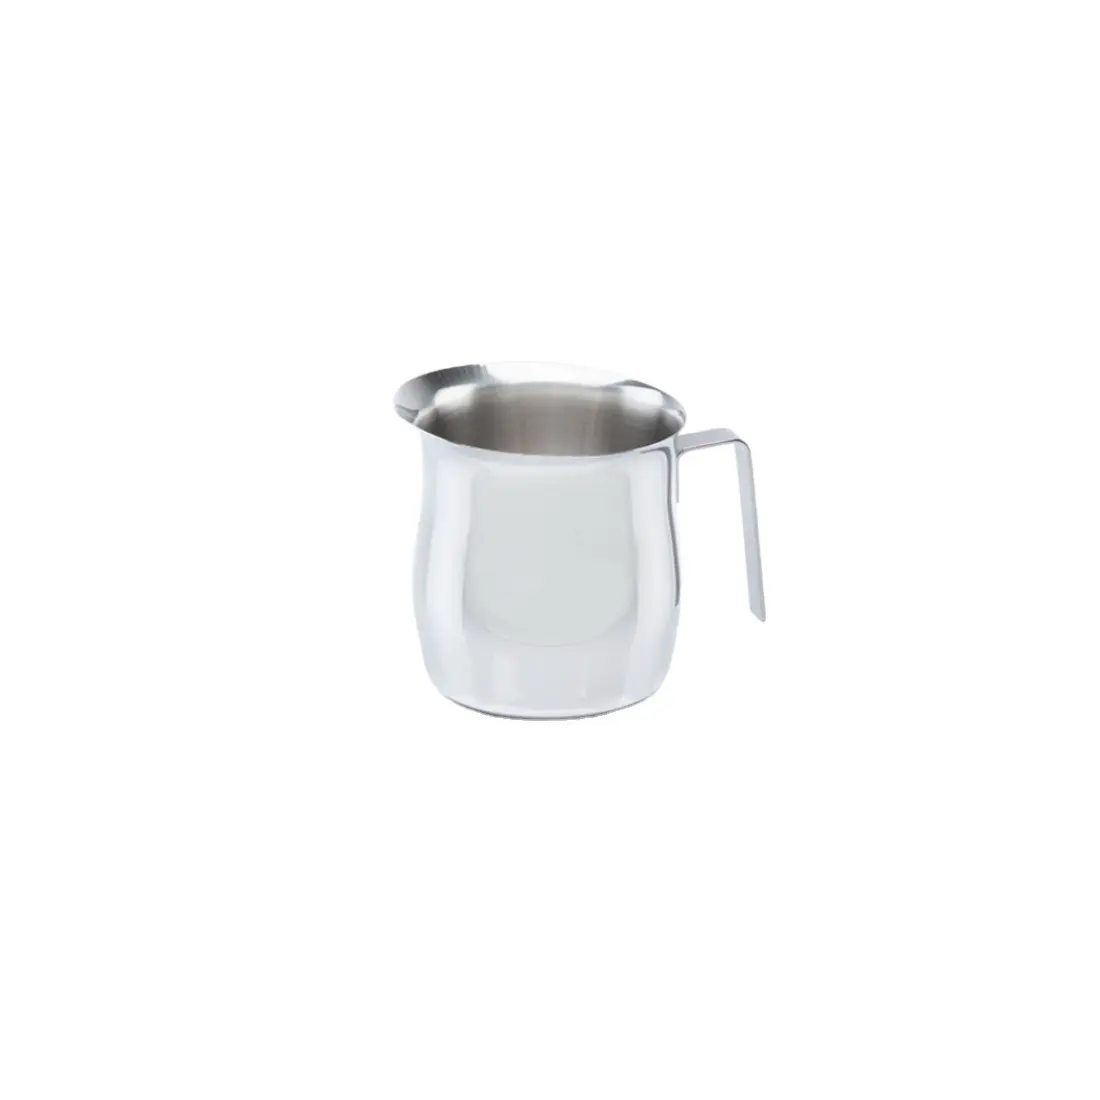 Pichet à lait à poignée ergonomique italienne 10 tasses à réchauffer le lait eau thé café outils de cuisine accessoires CLASSIC ensembles d'ustensiles de cuisine glace